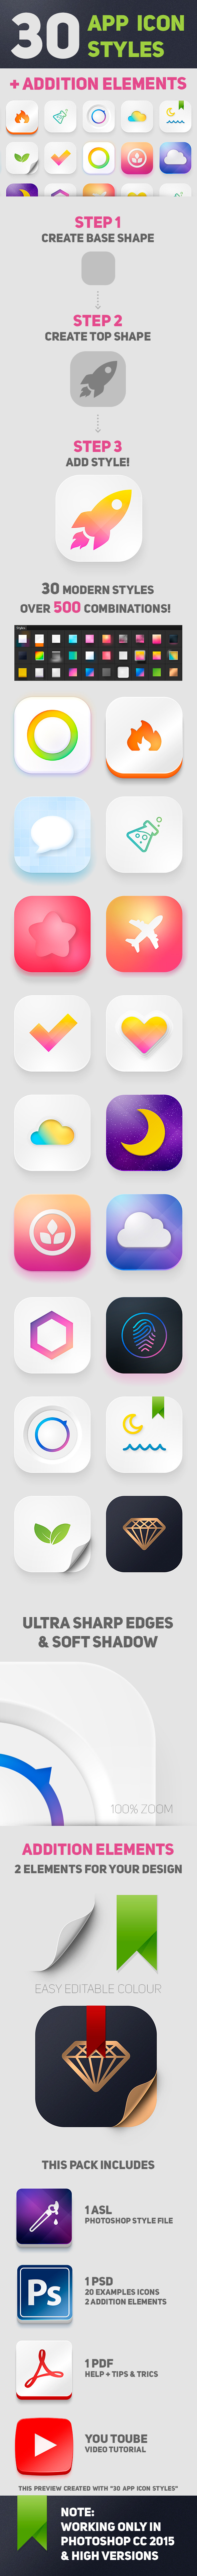 30 App Icon Styles